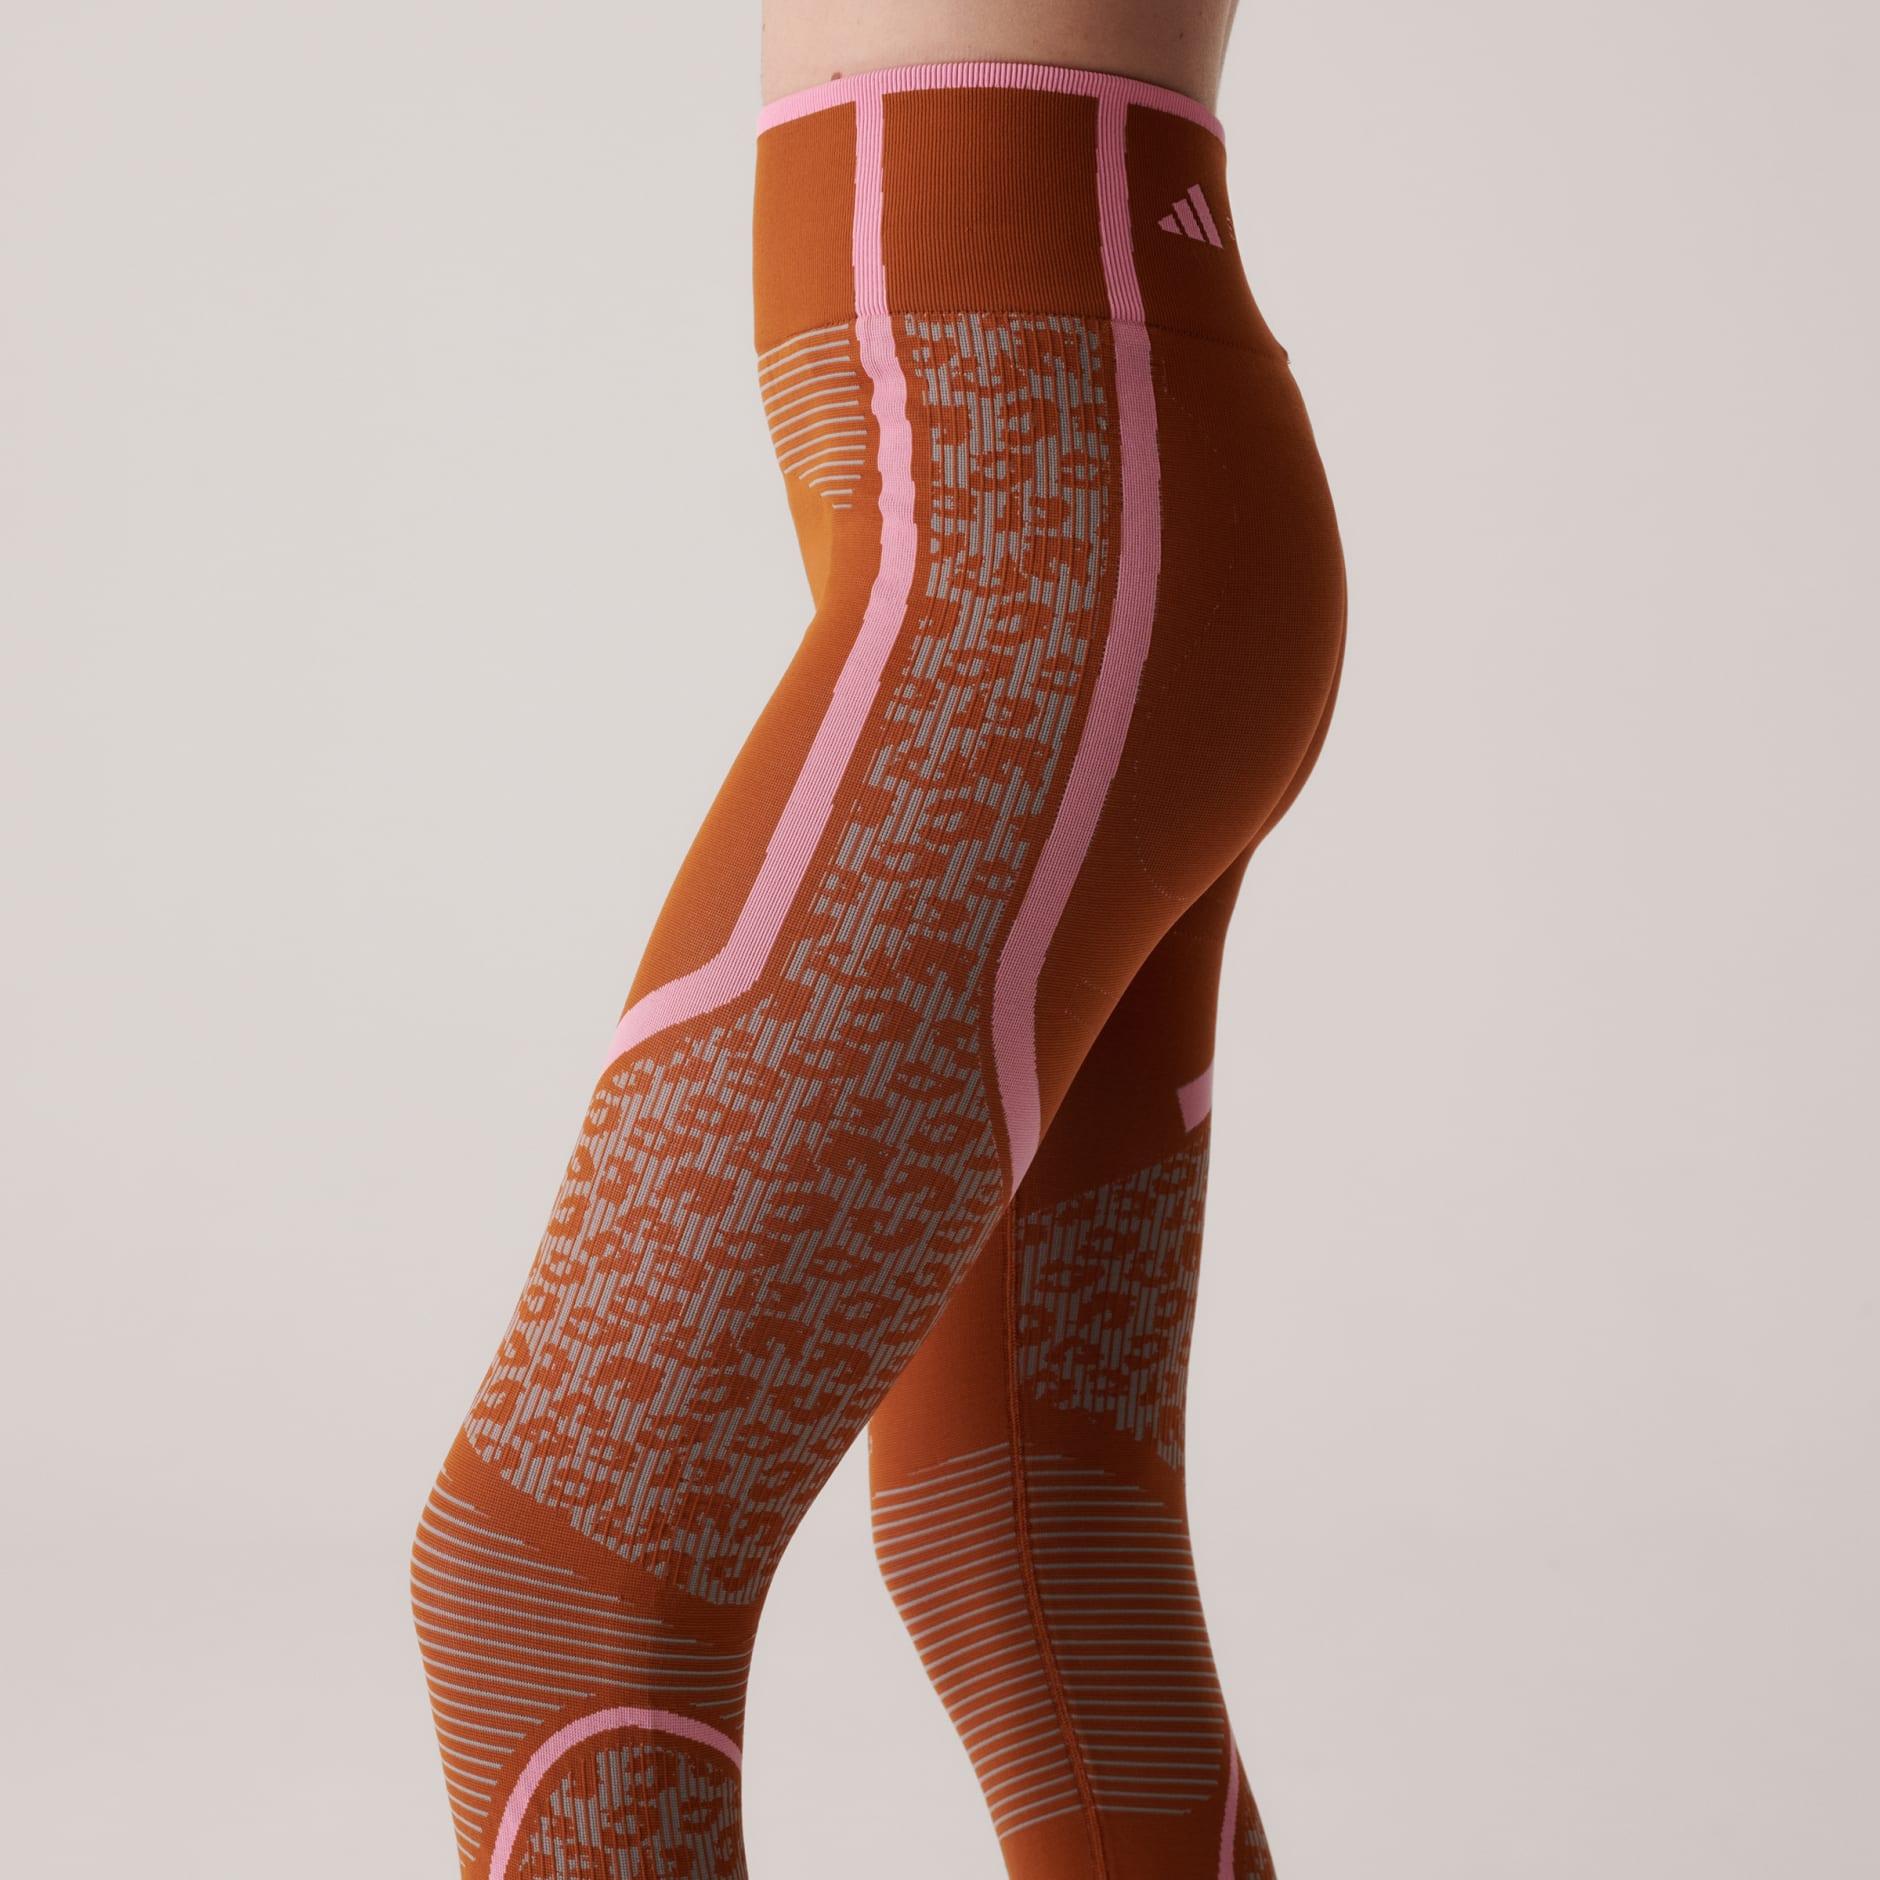 adidas adidas by Stella McCartney TrueStrength Seamless Yoga